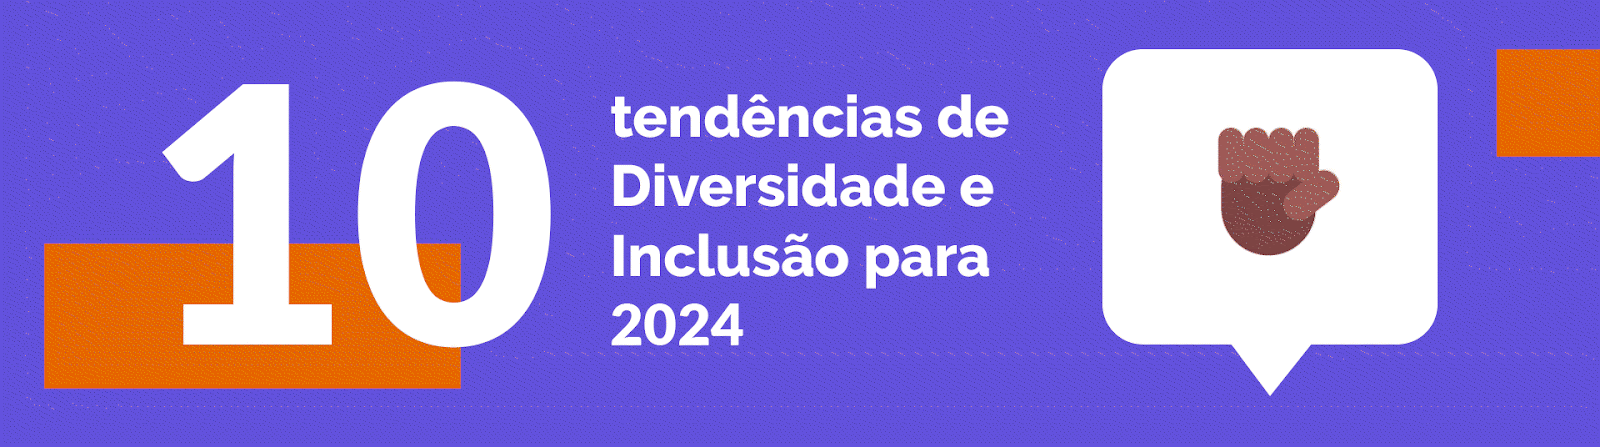 Banner animado com o texto "10 tendências de diversidade e inclusão para 2024". Do lado esquerdo, um gif com diferentes ícones representando cada uma das tendências.